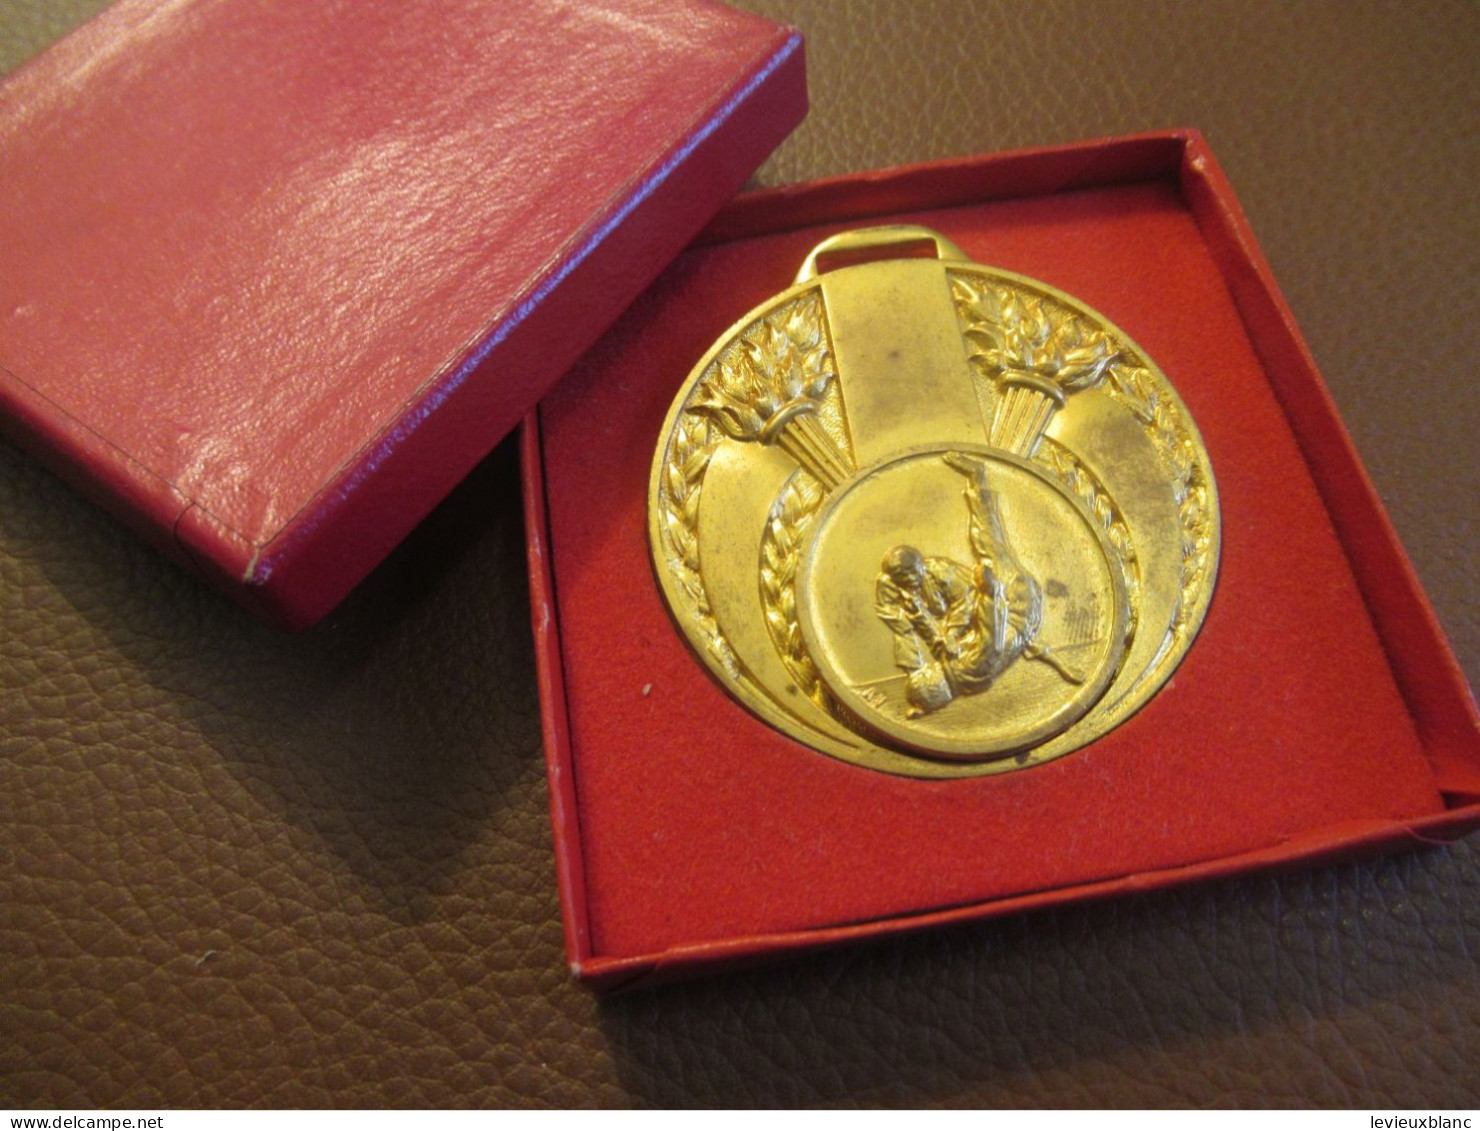 JUDO / Médaille De Compétition / Attribuée/ Bronze Doré / Espoir A.S.M. 1975 /1975    SPO469 - Kampfsport